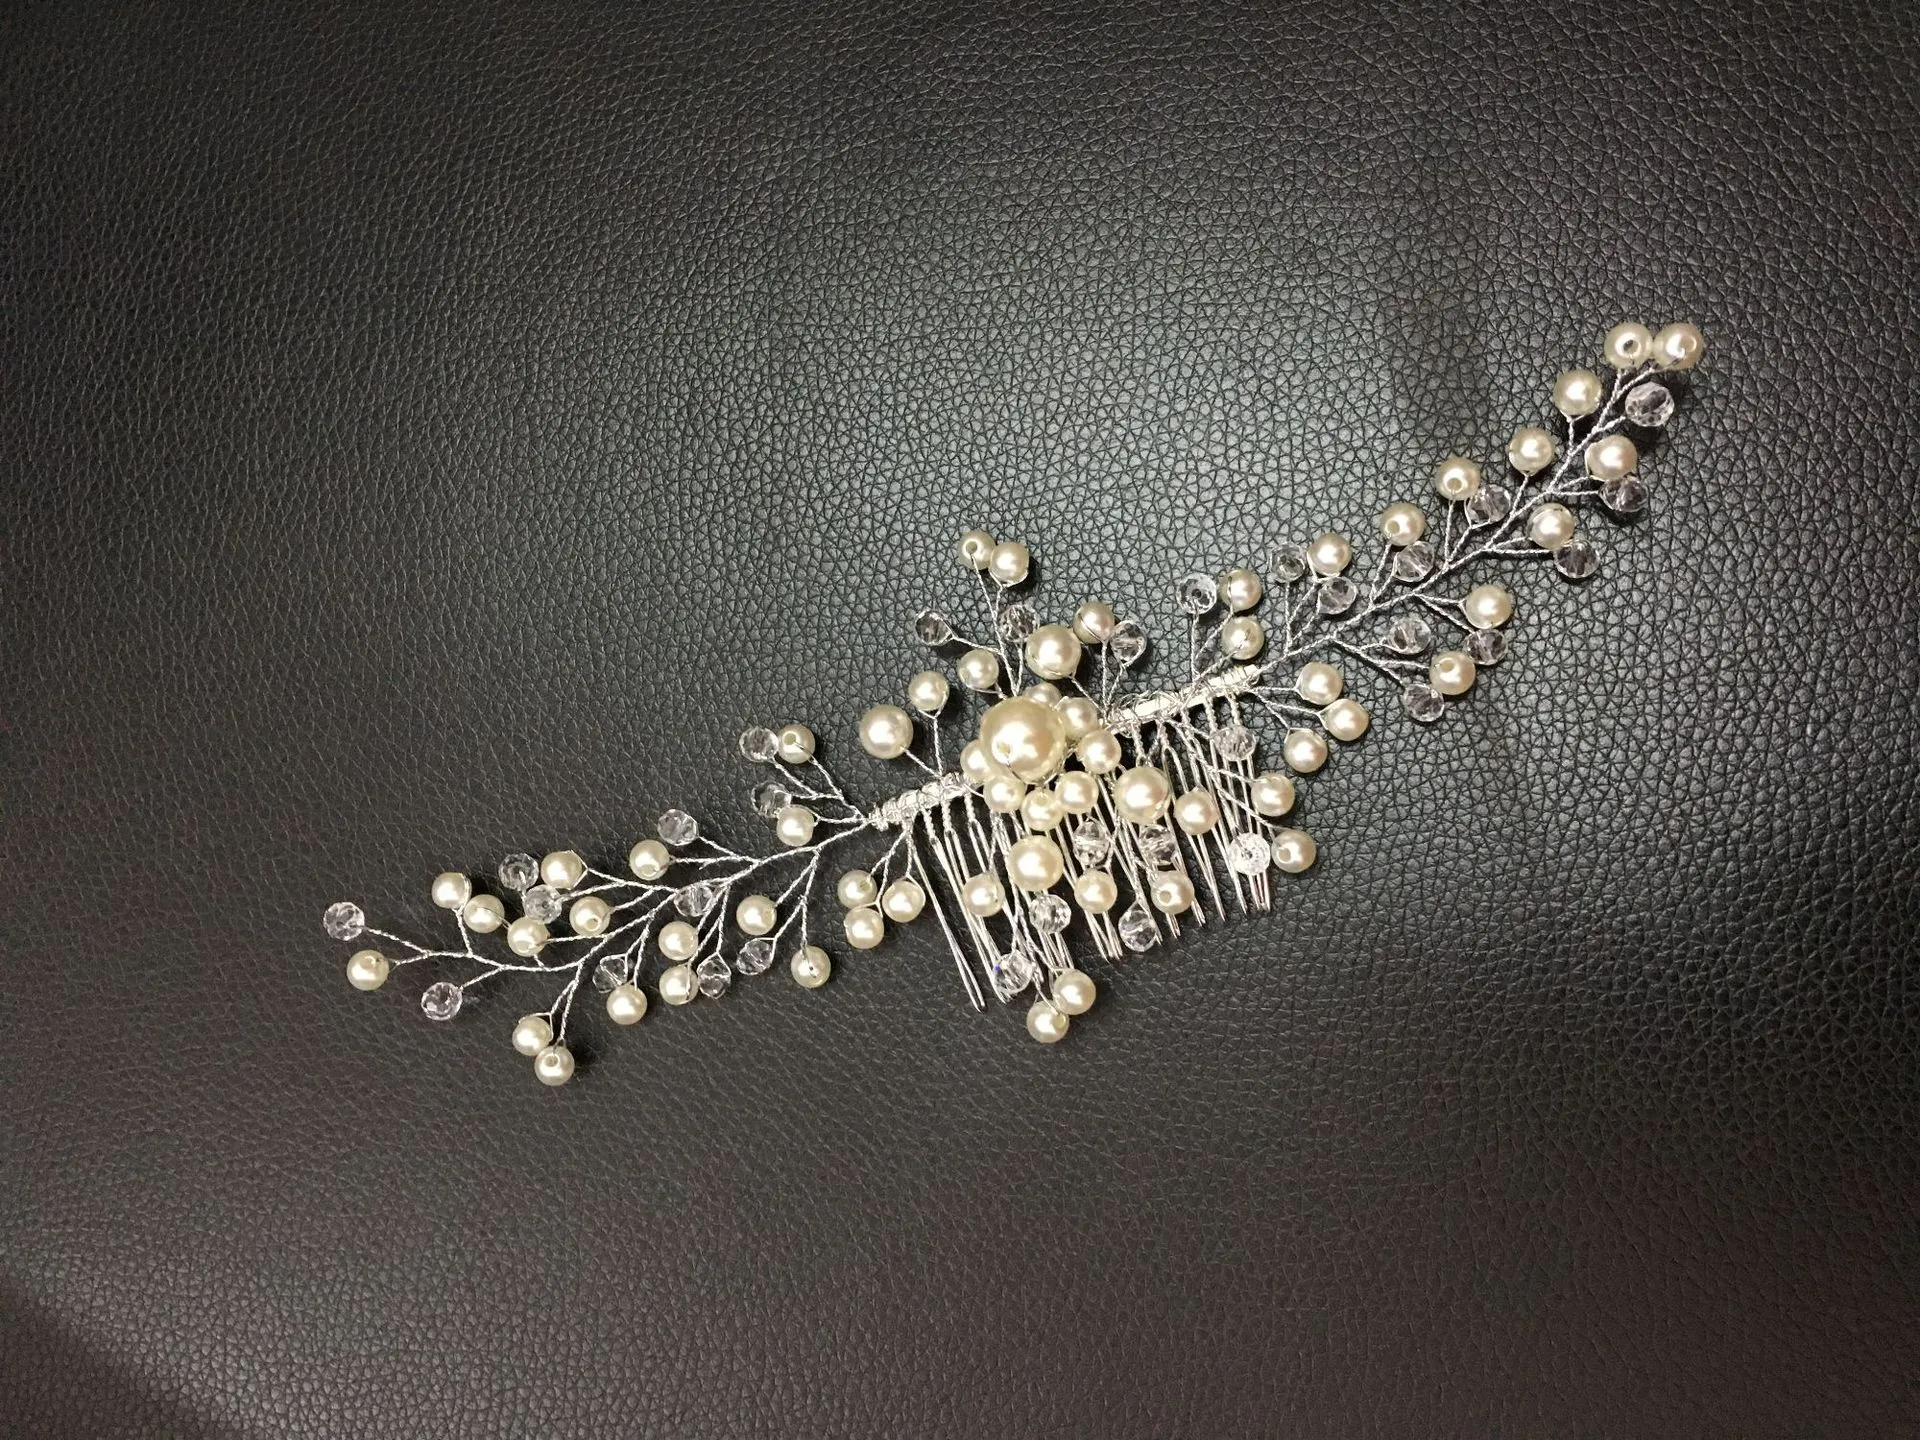 Vendre à chaud des peignes à cheveux perles faits à la main pour les fabricants transfrontaliers pour vendre des coiffes directement